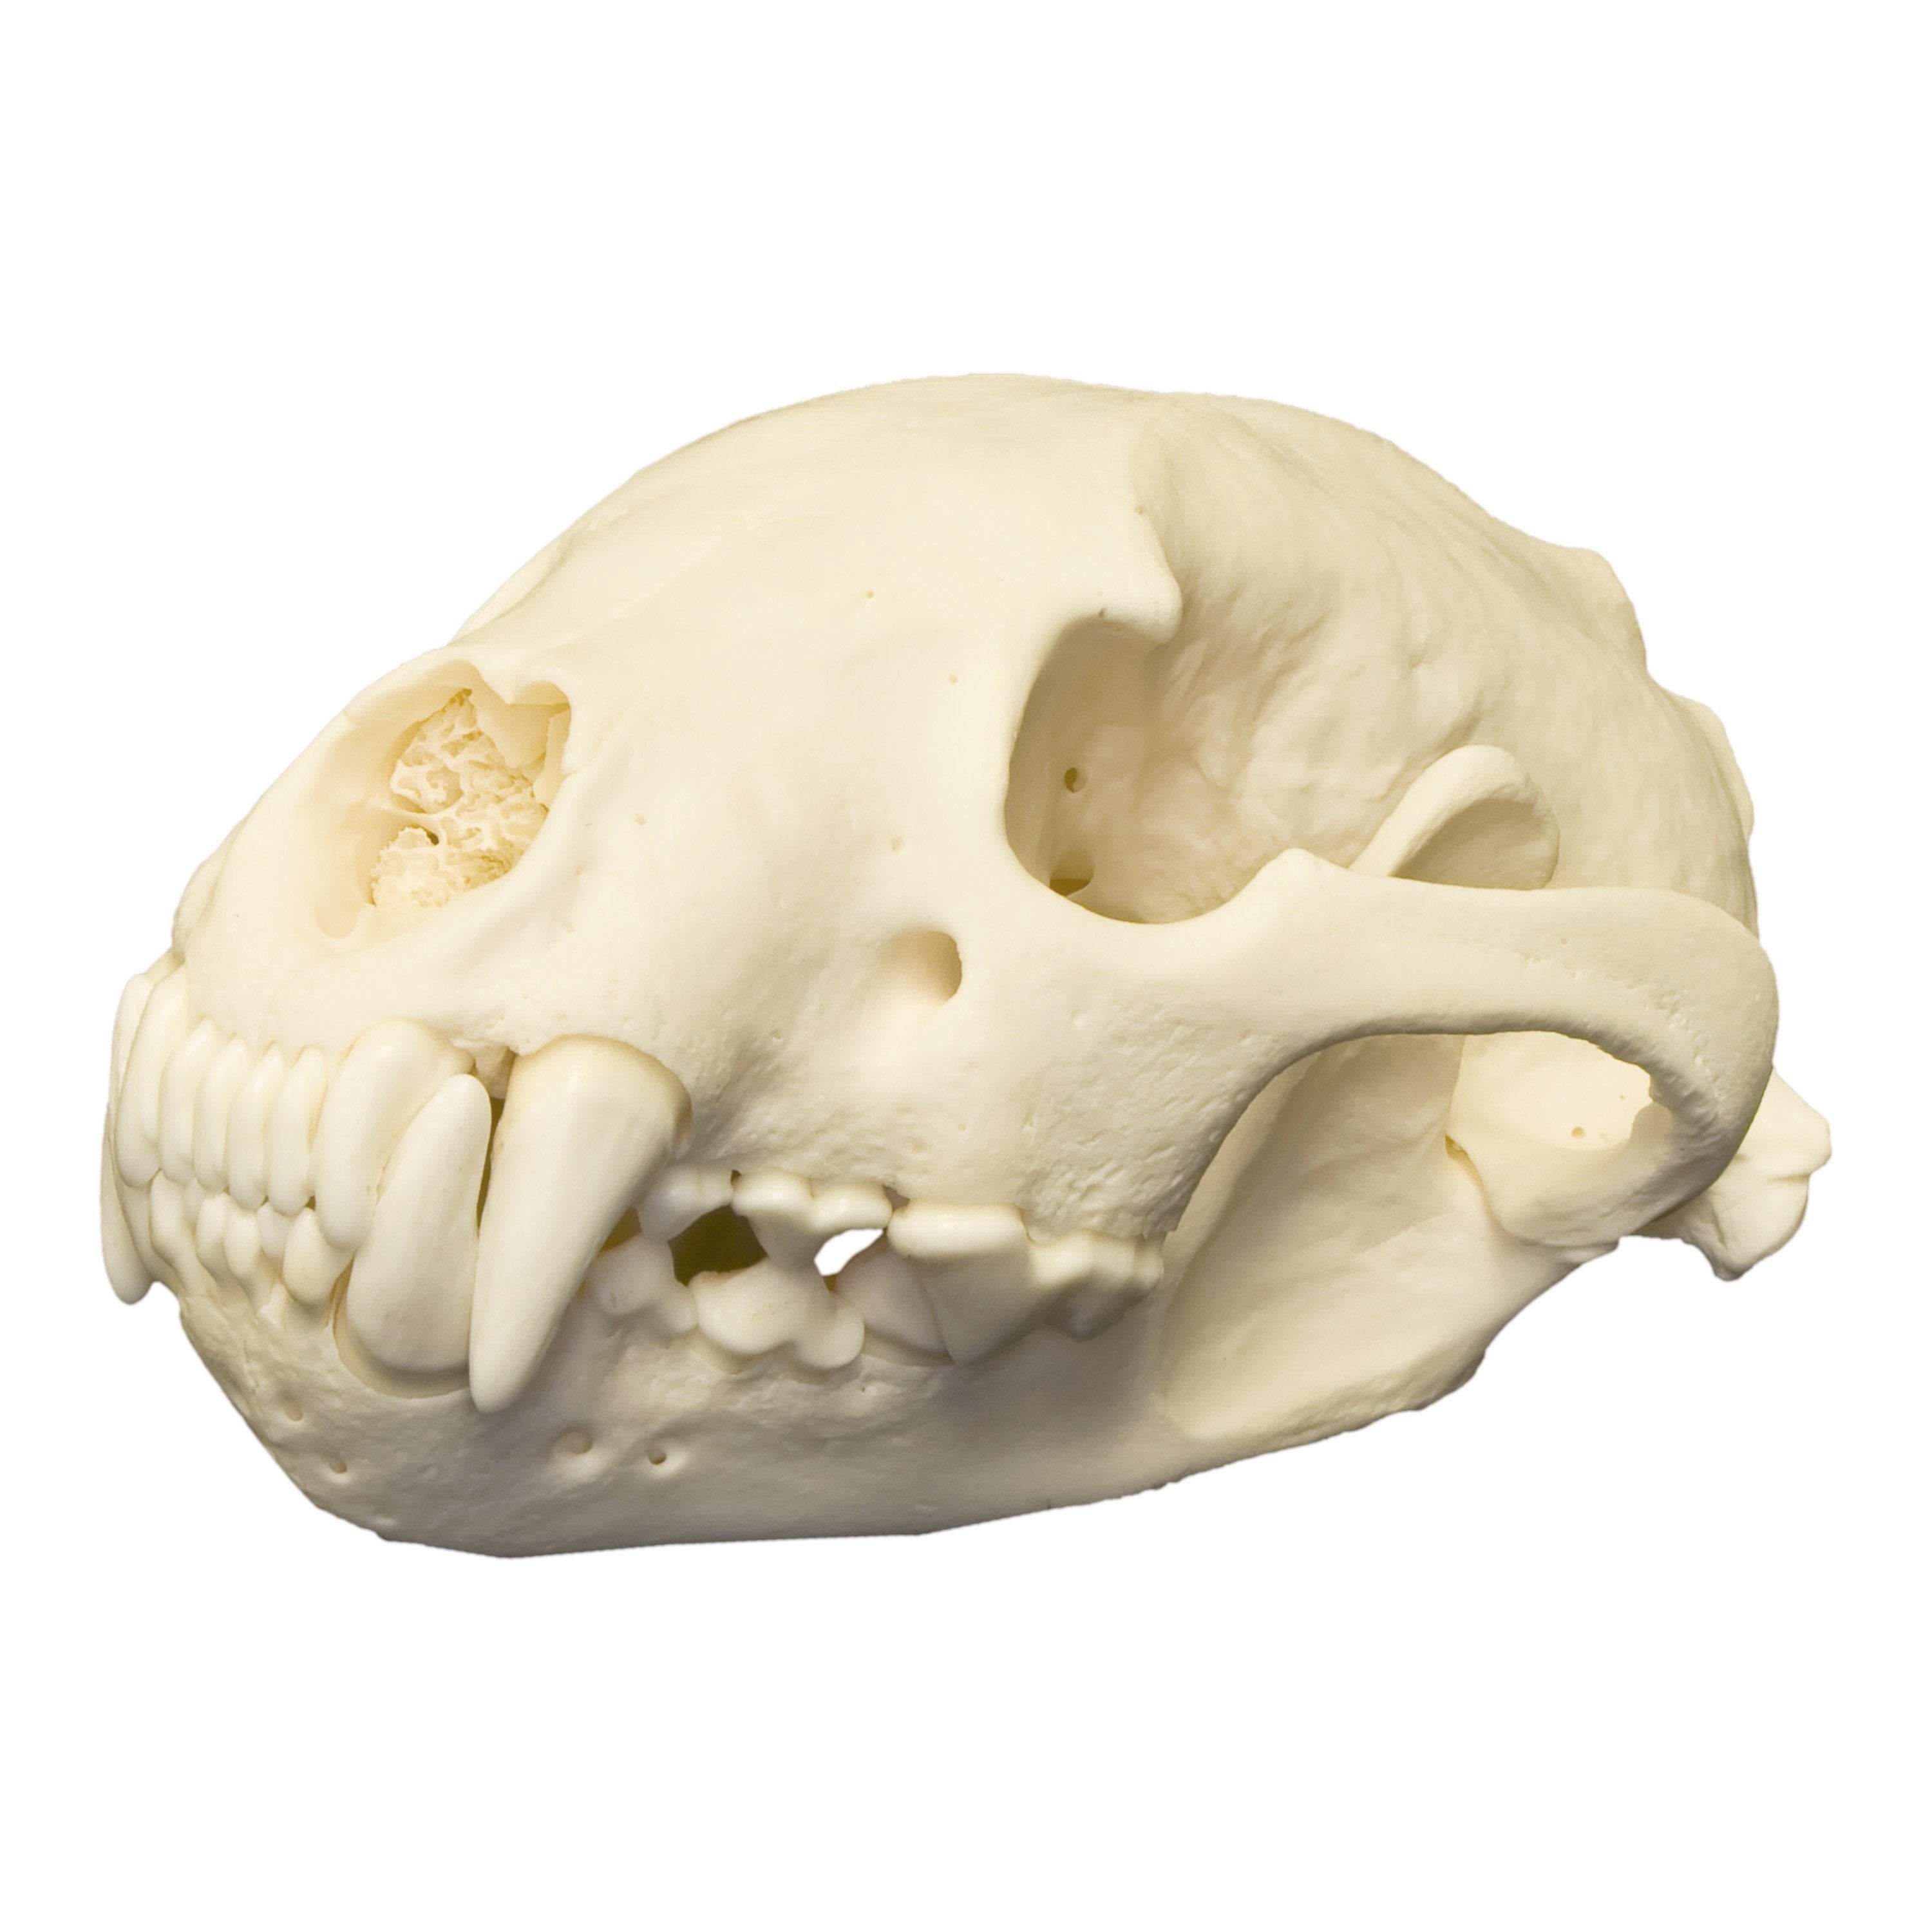 Класс млекопитающие череп